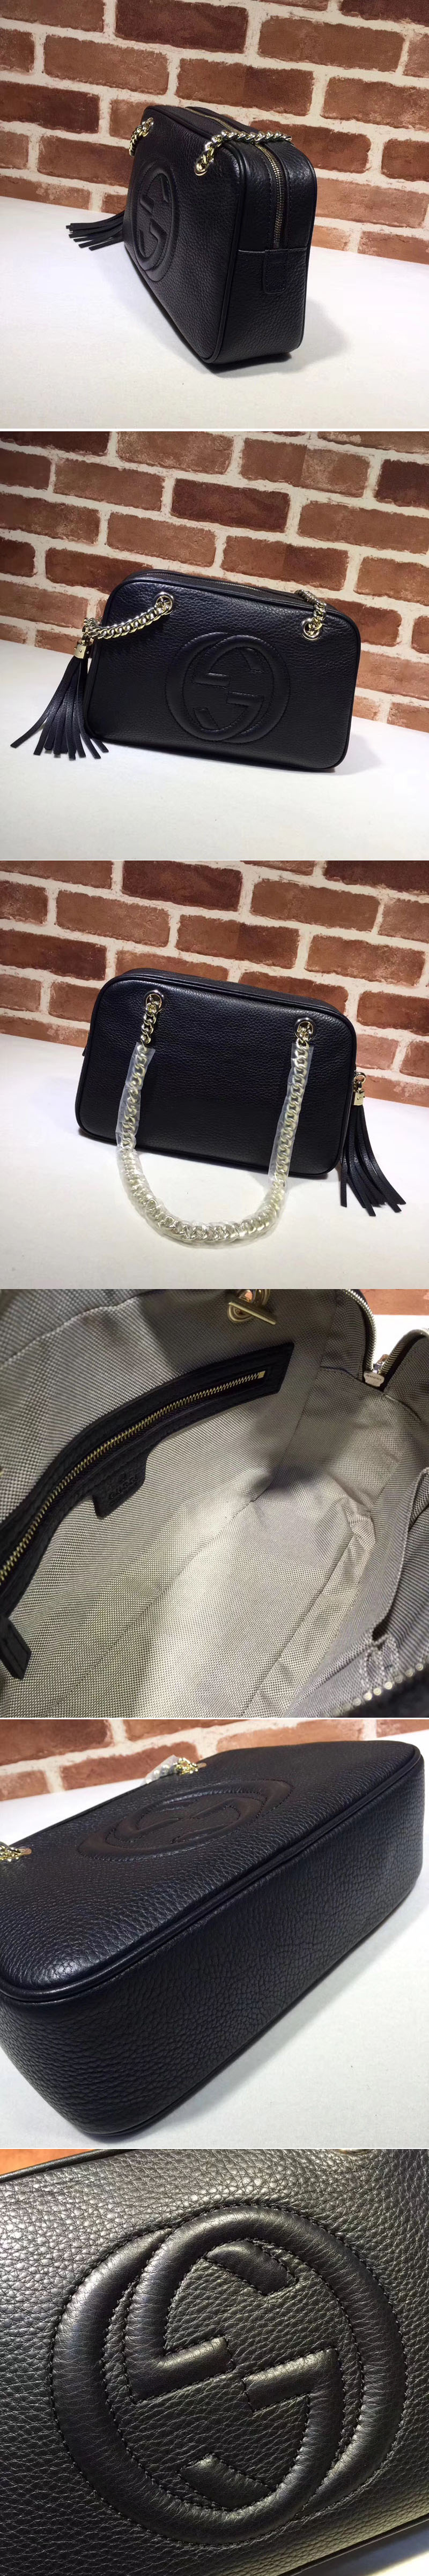 Replica Gucci 308983 Soho Shoulder Bags Black